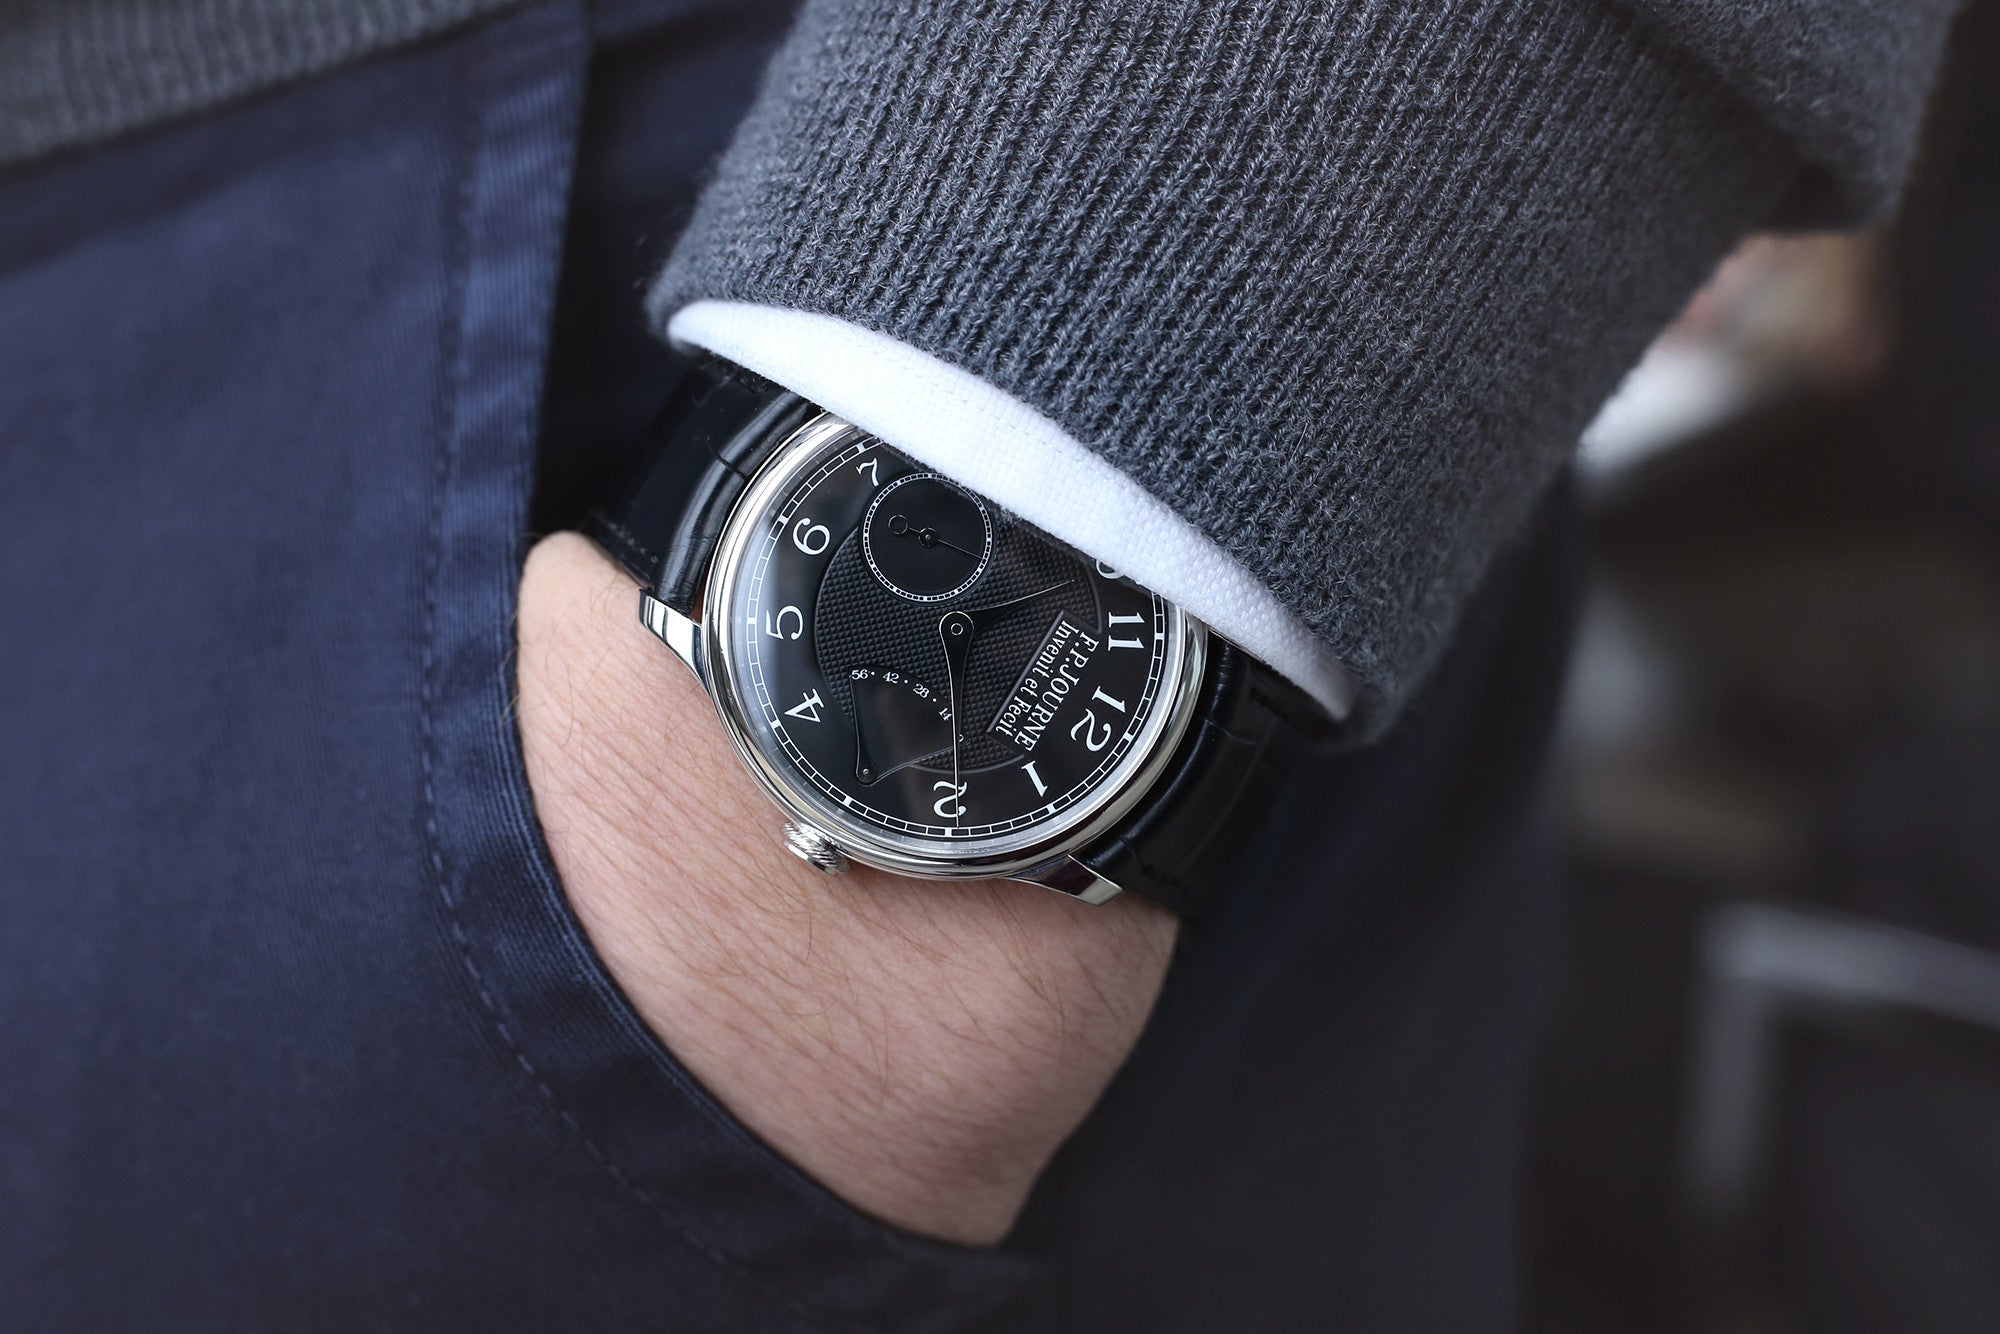 F. P. Journe Chronometre Souverain Black label platinum 38 mm dress watch online at A Collected Man